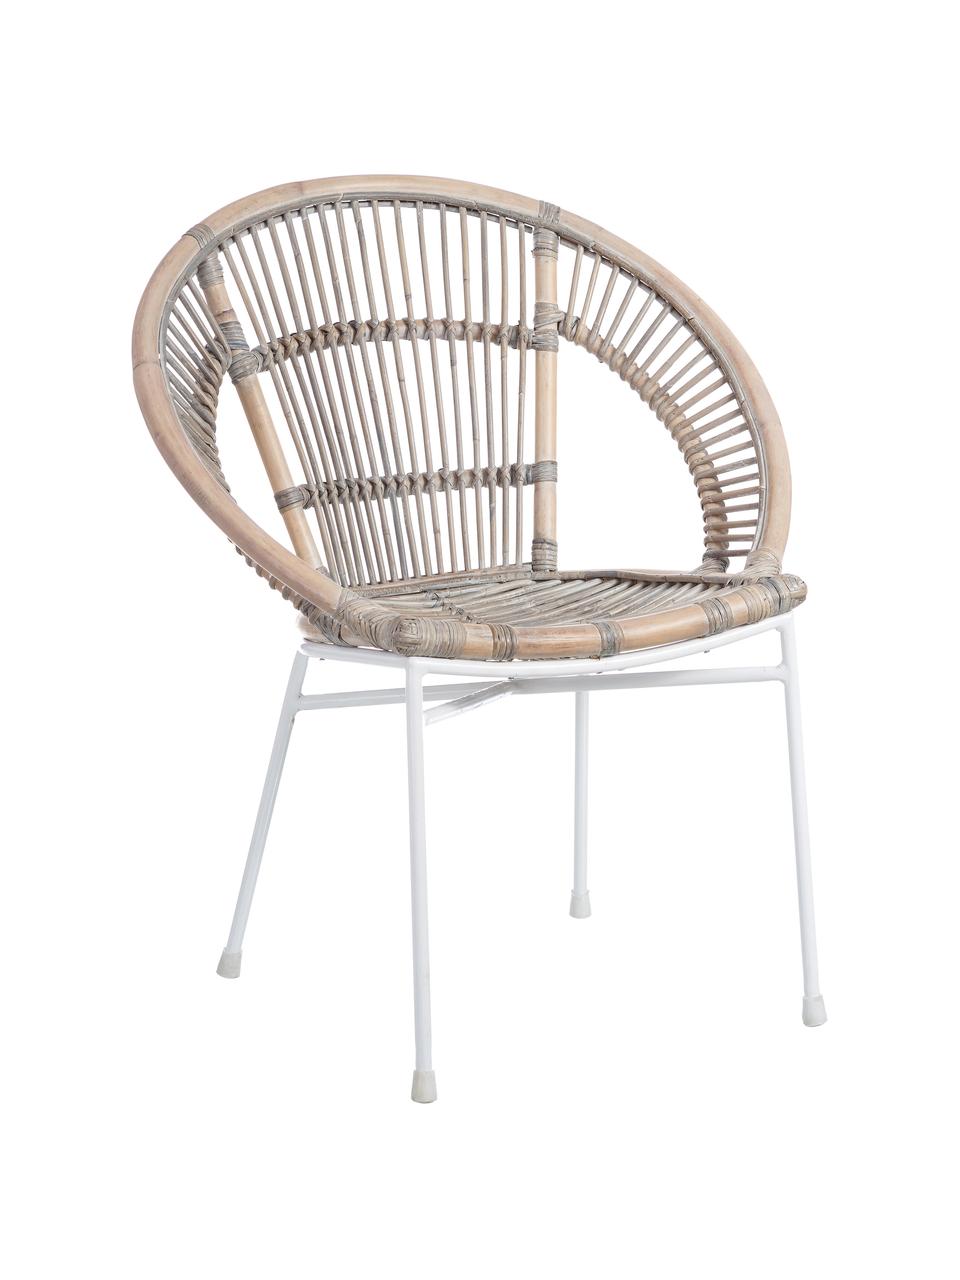 Krzesło z rattanu Carla, Nogi: metal lakierowany, Beżowy, S 63 x G 66 cm